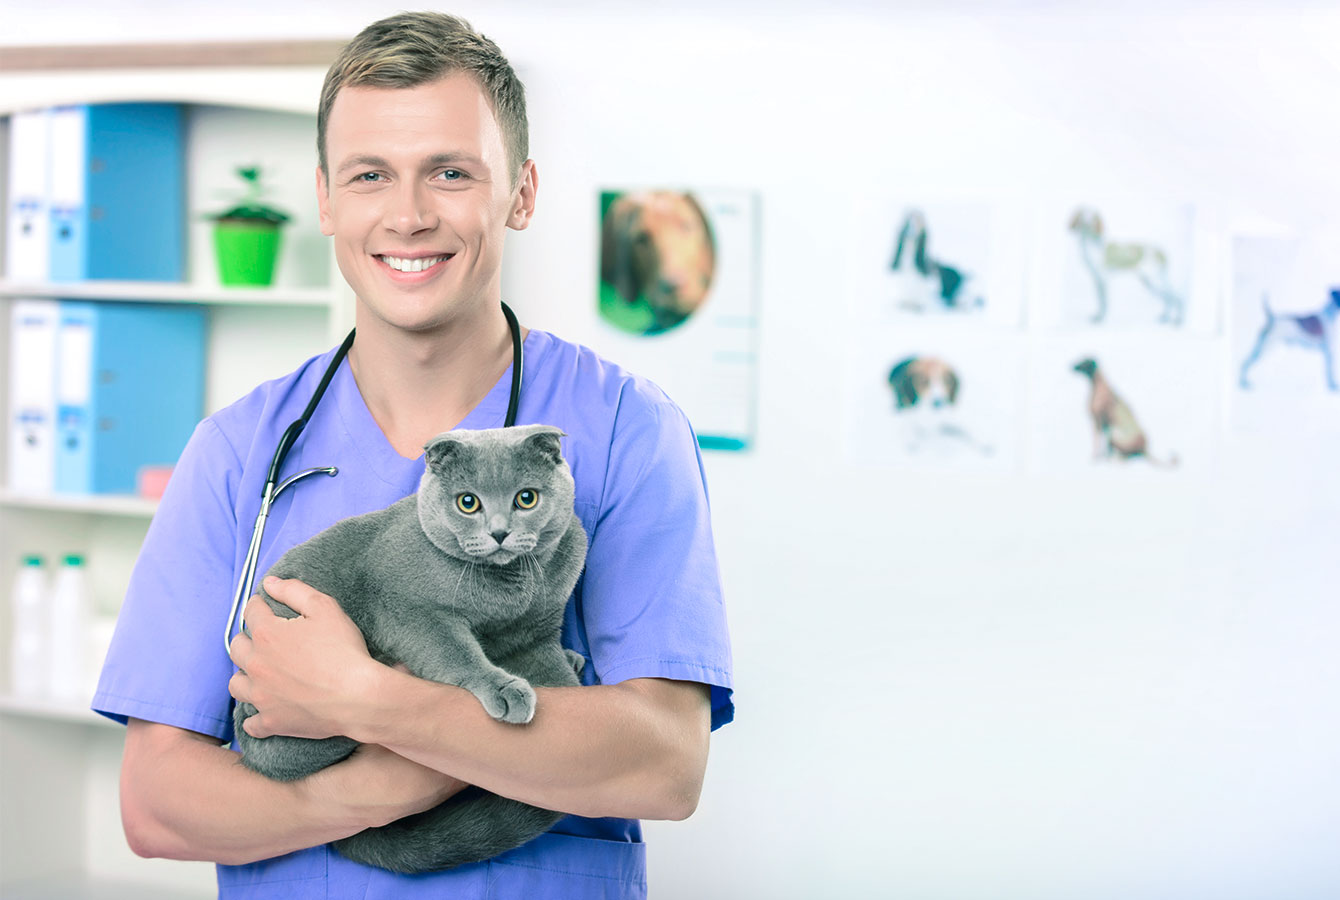 สัตวแพทย์ชายกำลังอุ้มแมวซึ่งเจ้าของจองบริการโดยใช้ระบบจอง Planfy